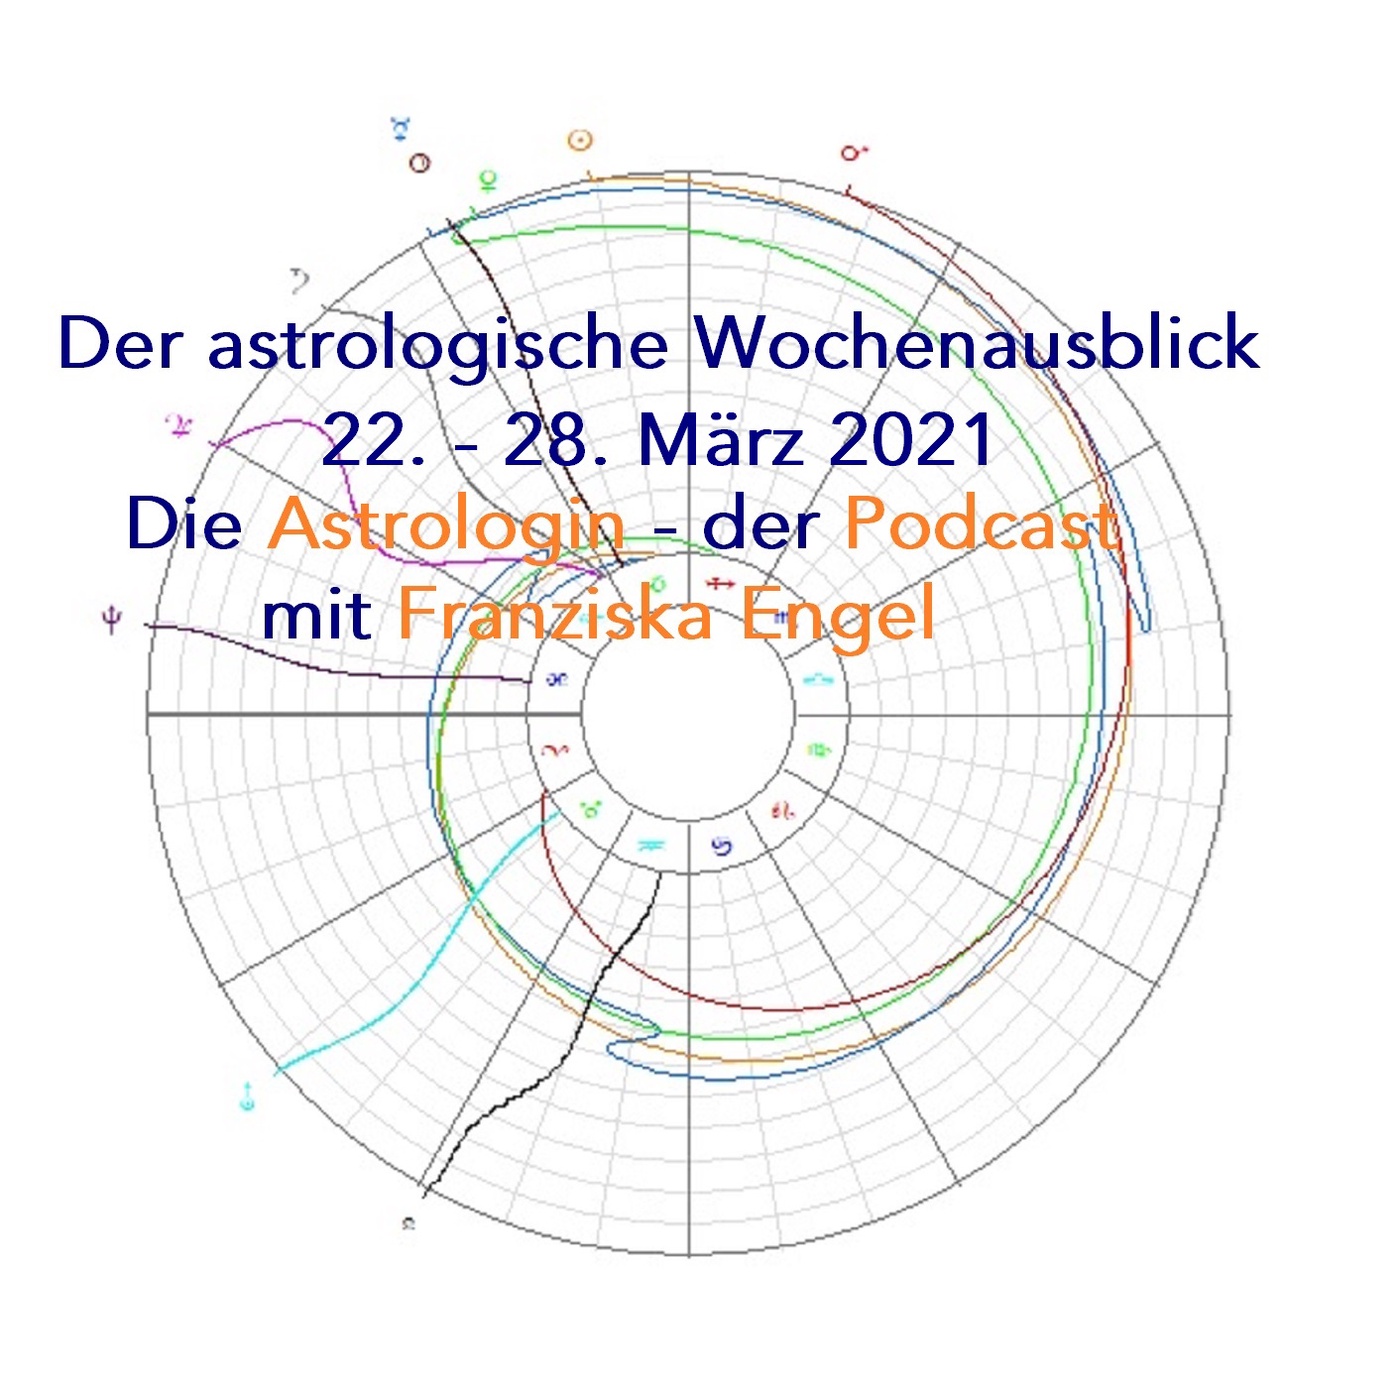 Astrologischer Wochenausblick 22. - 28. März 2021